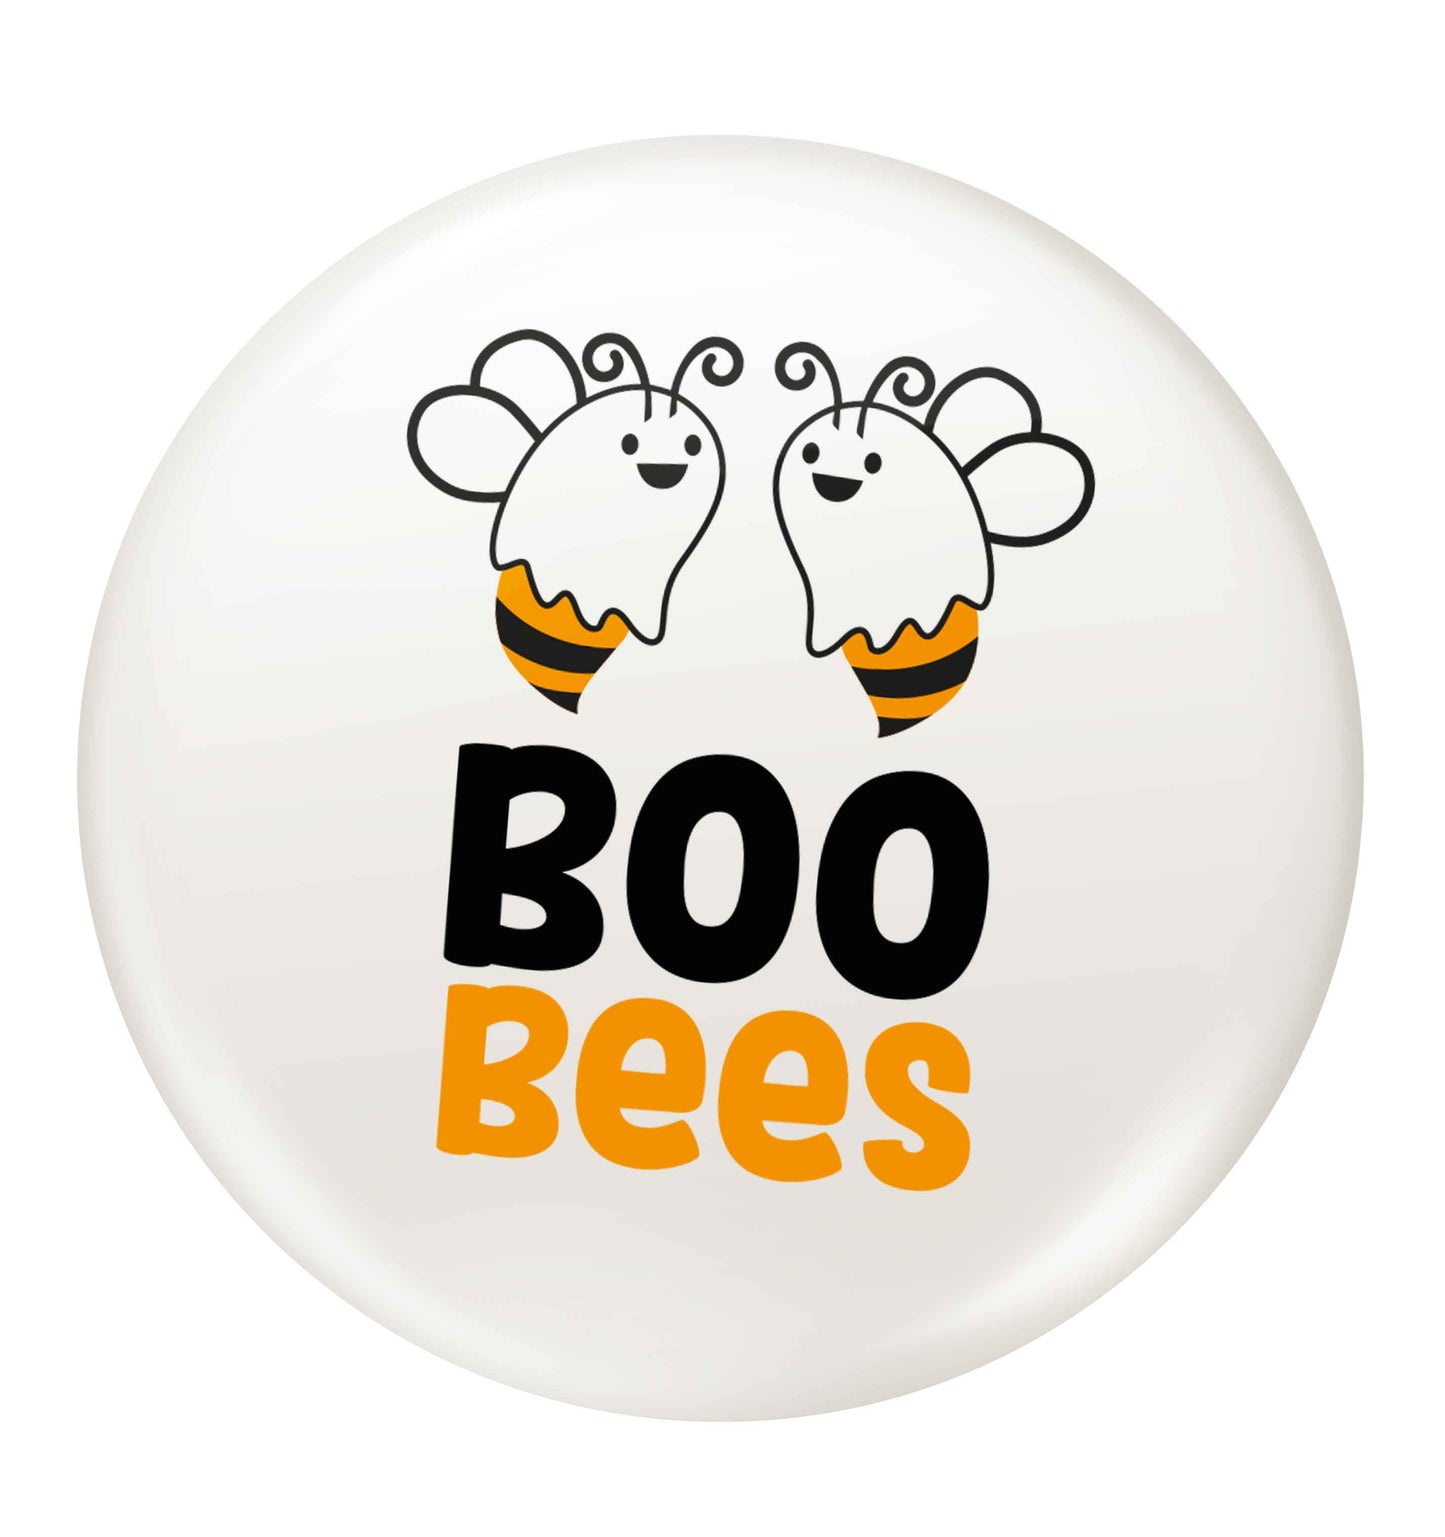 Boo bees Kit small 25mm Pin badge